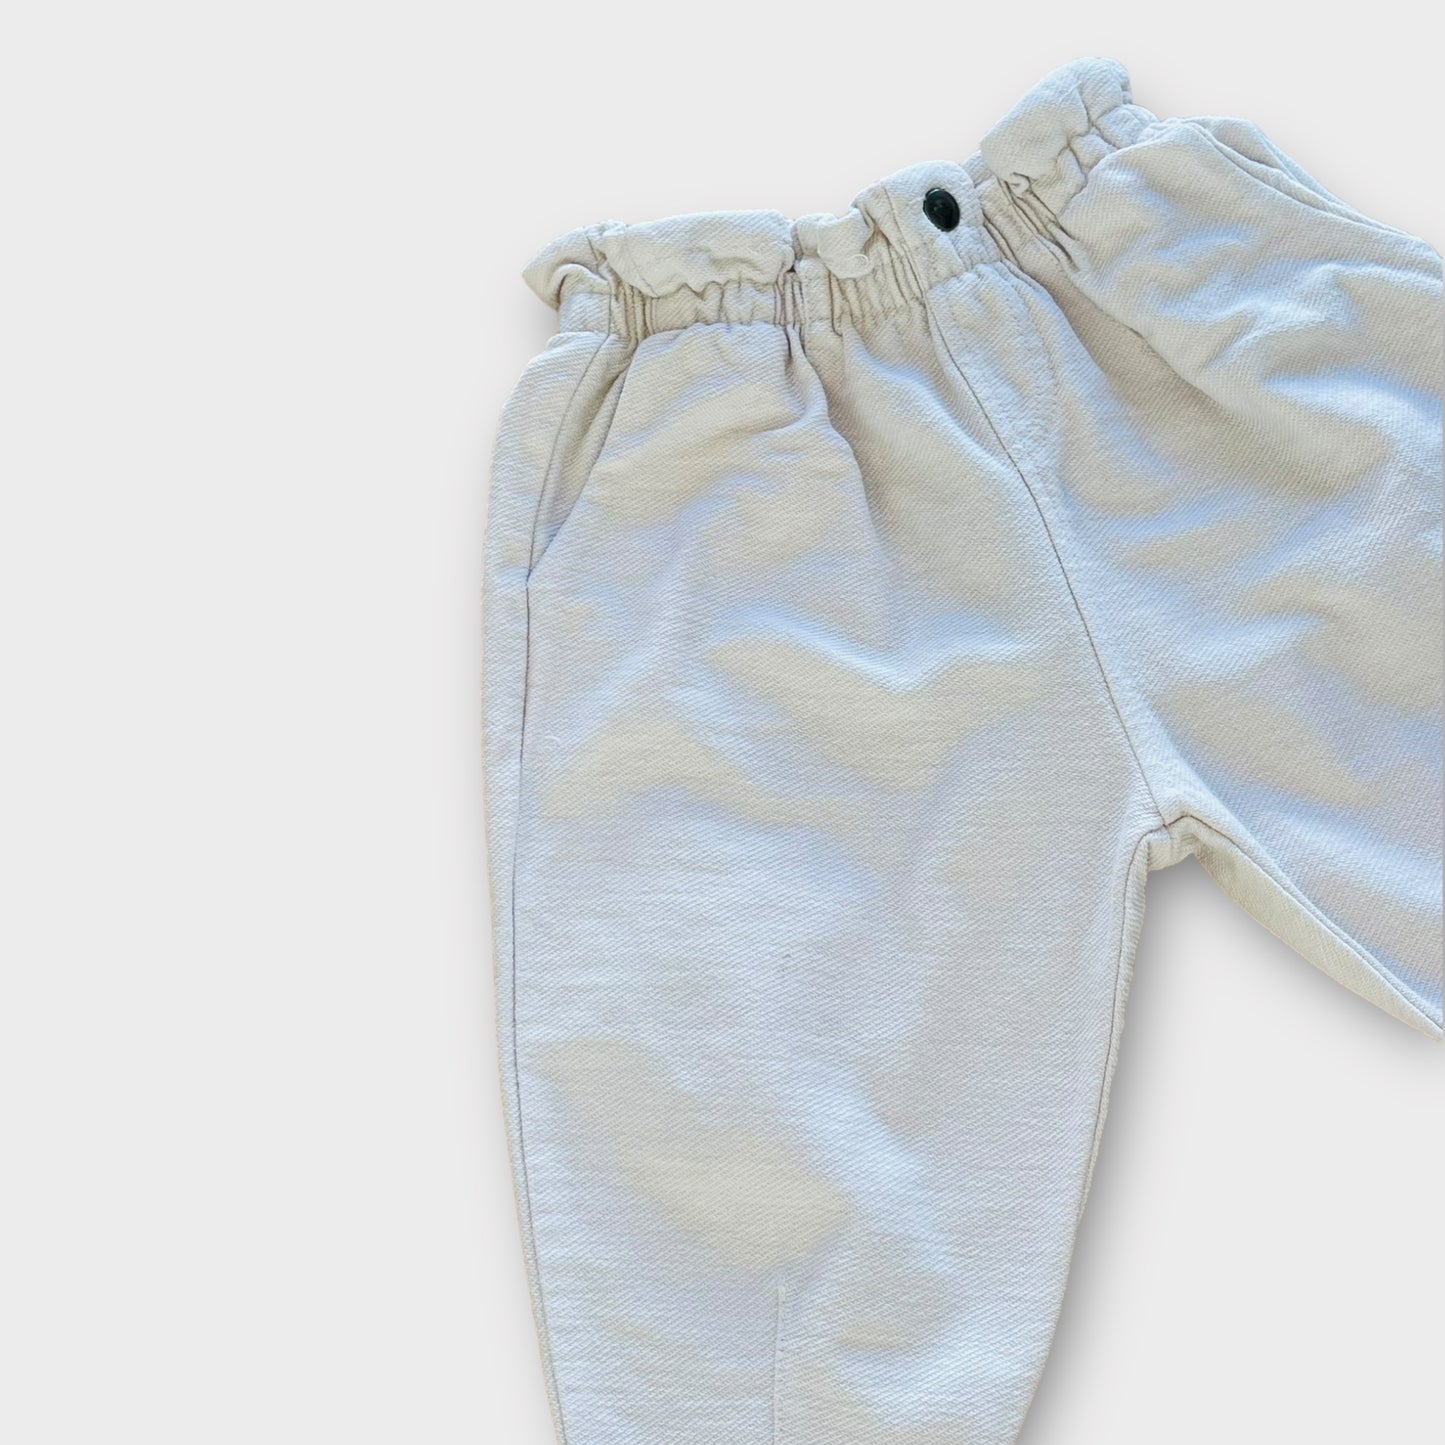 Zara - pantalon - 6-9 mois (défaut)